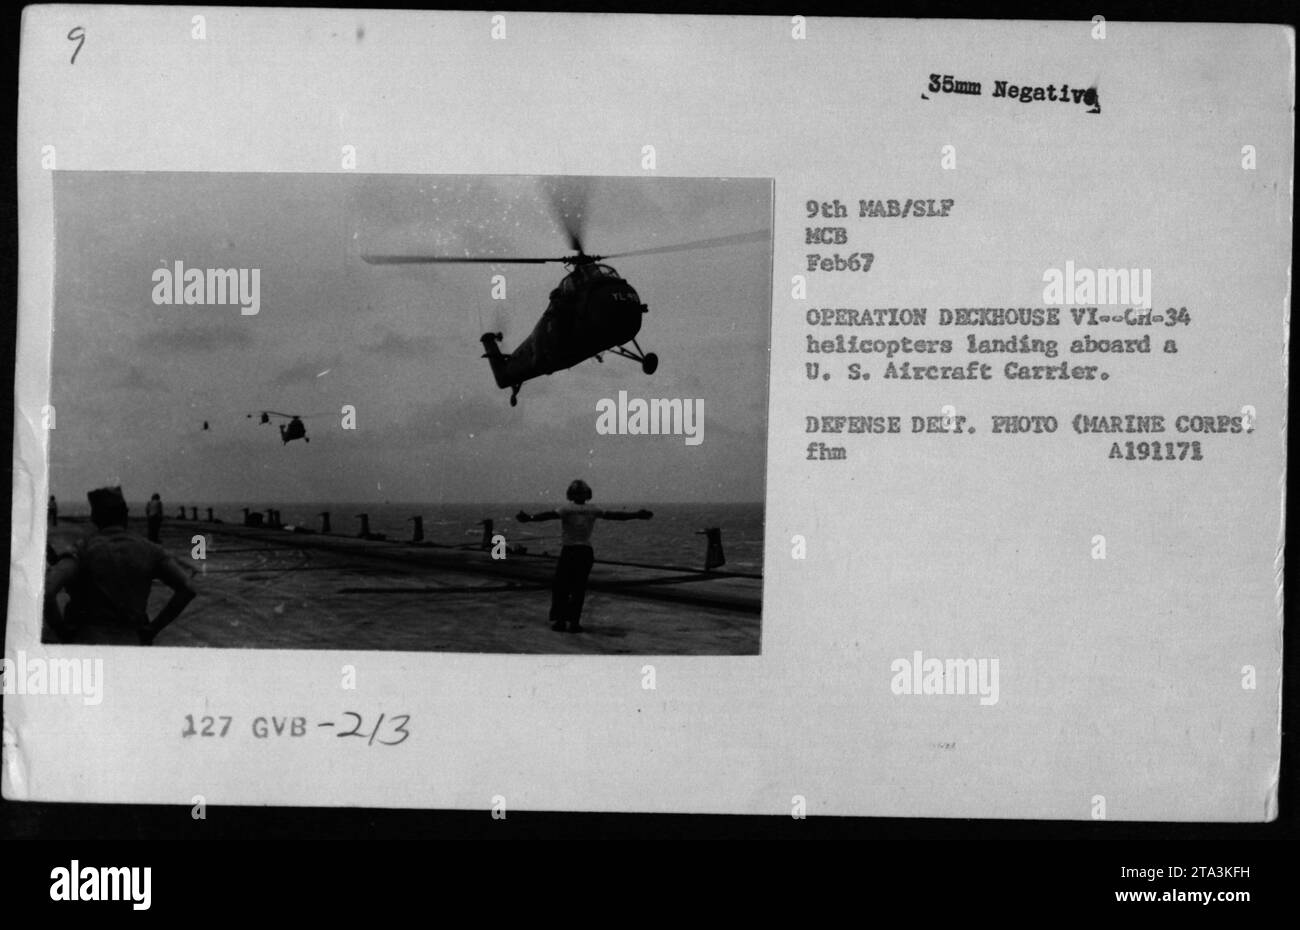 Gli elicotteri della marina statunitense atterrano su una portaerei durante l'operazione Deckhouse vi nel febbraio 1967. Questa foto cattura un momento di attività militari americane durante la guerra del Vietnam. Foto Stock